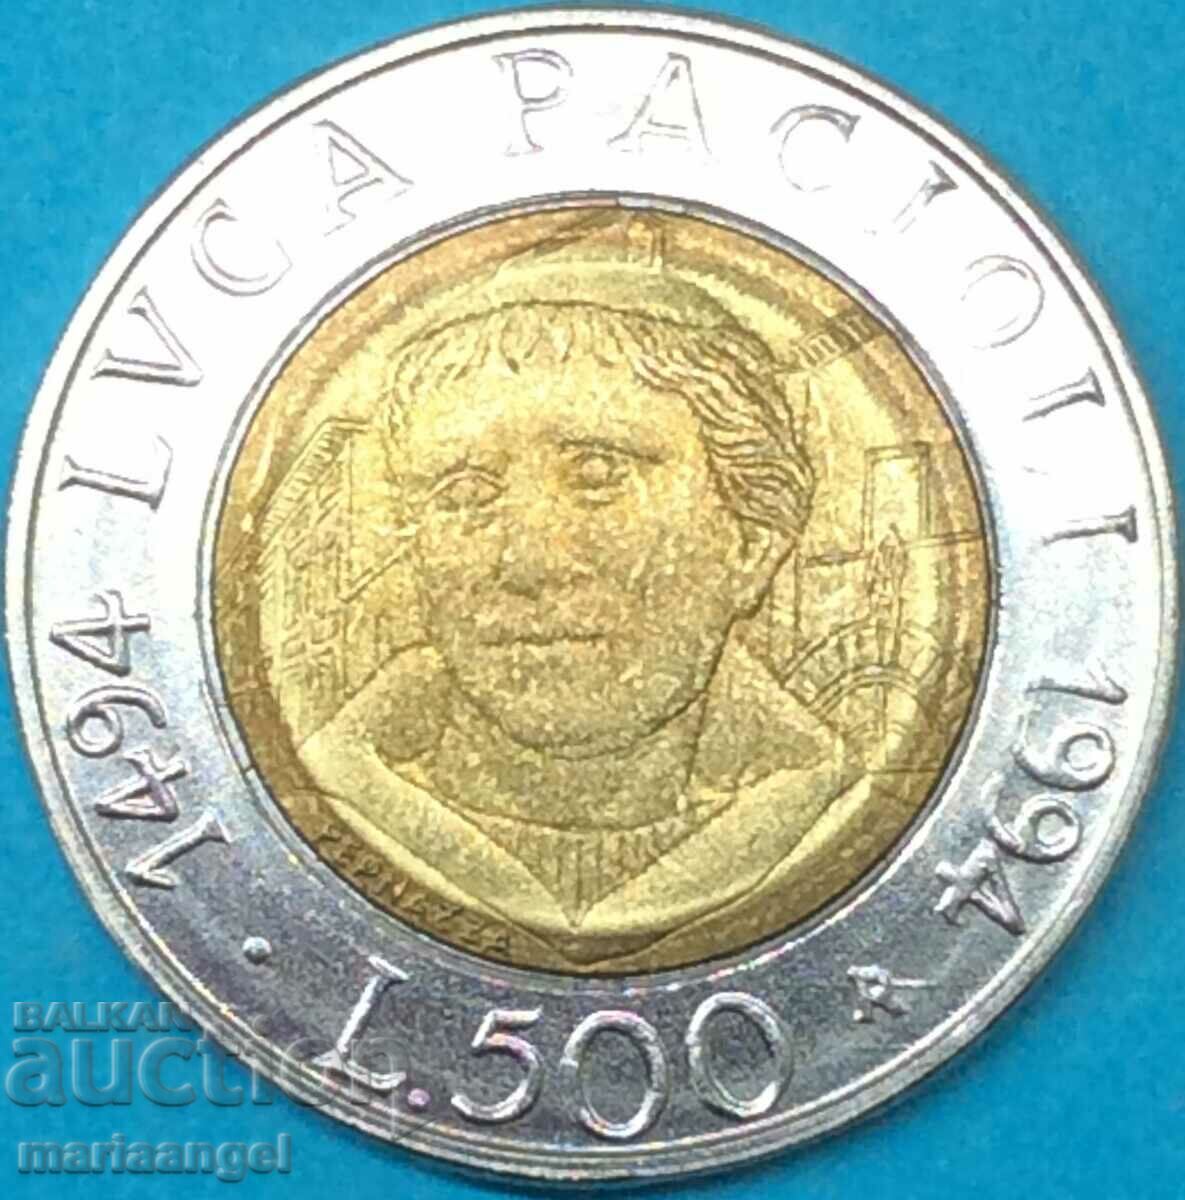 500 lire 1994 Italy 500 of Luca Pacioli